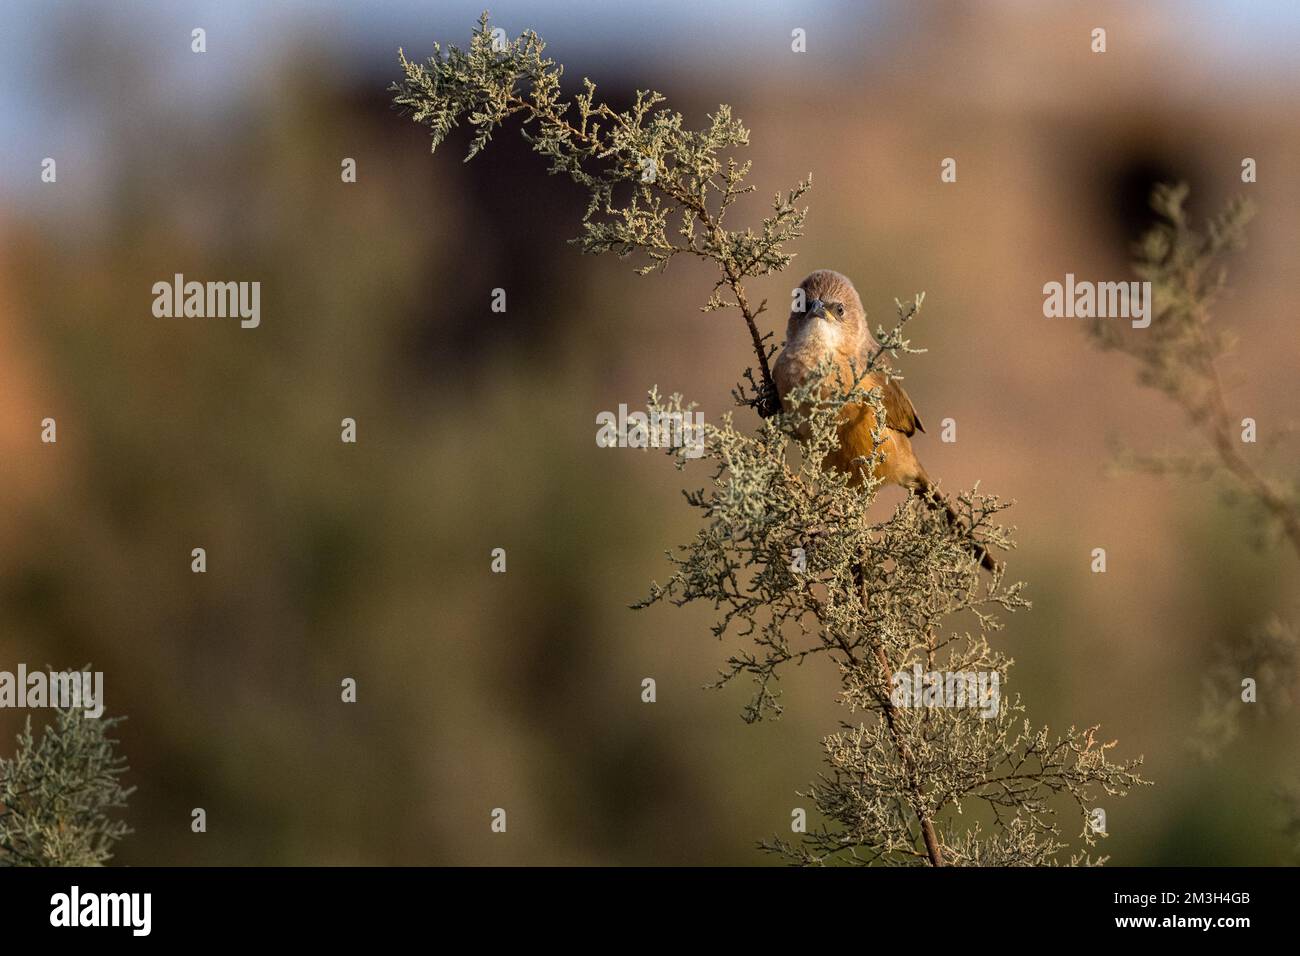 Fulvous Babbler, Fulvous Chatterer, Argya fulva, Turdoides fulva. Sahara desert, Morocco. Stock Photo